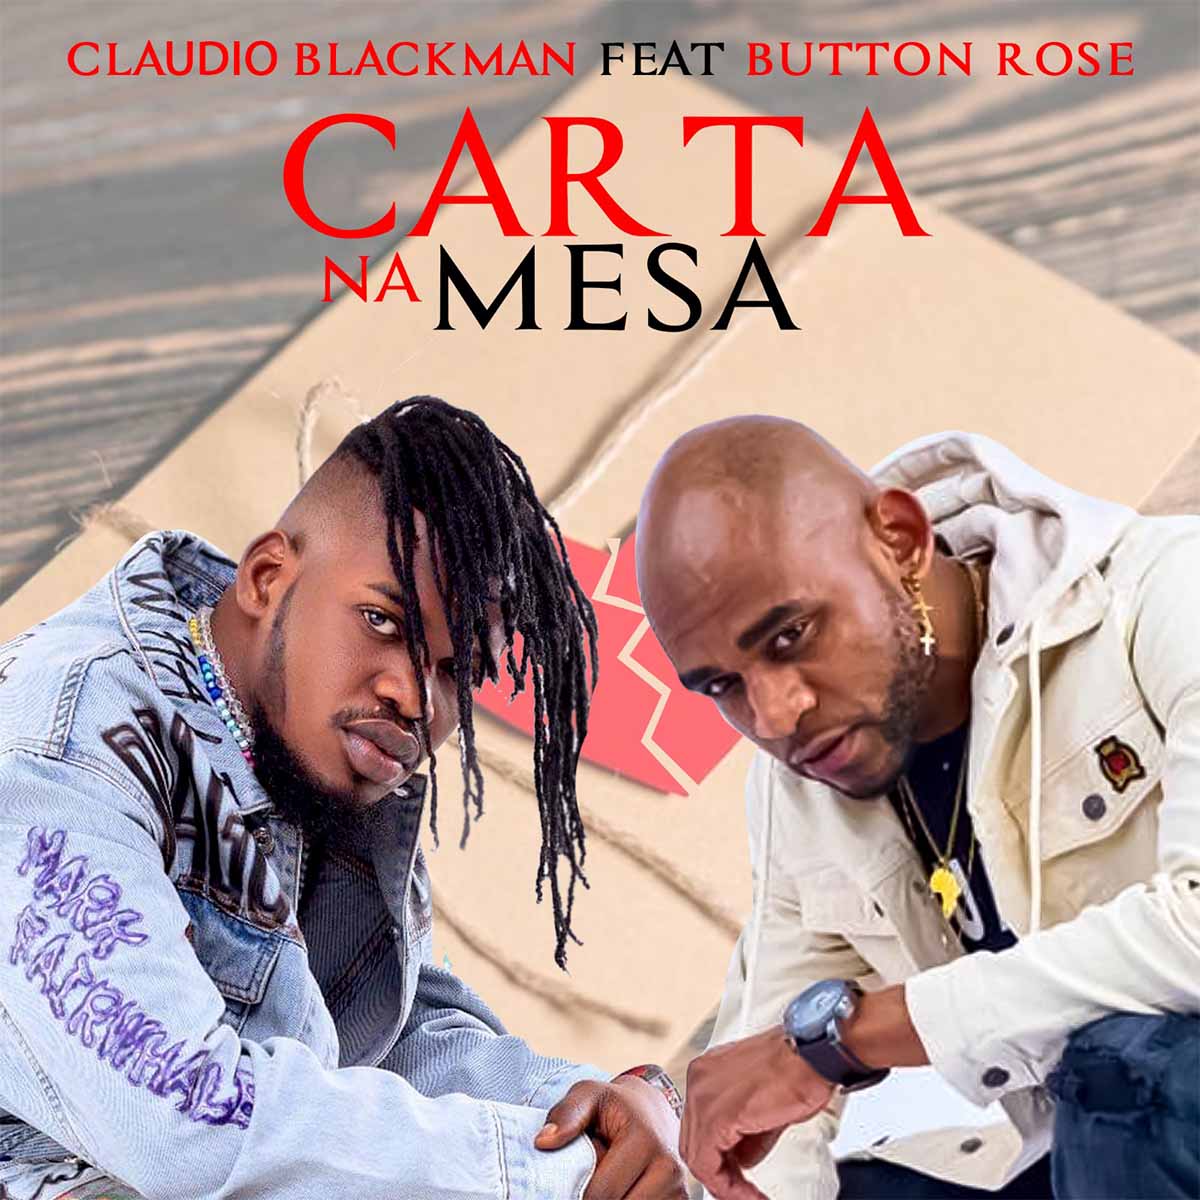 Cláudio Blackman - Carta Na Mesa (feat. Button Rose)